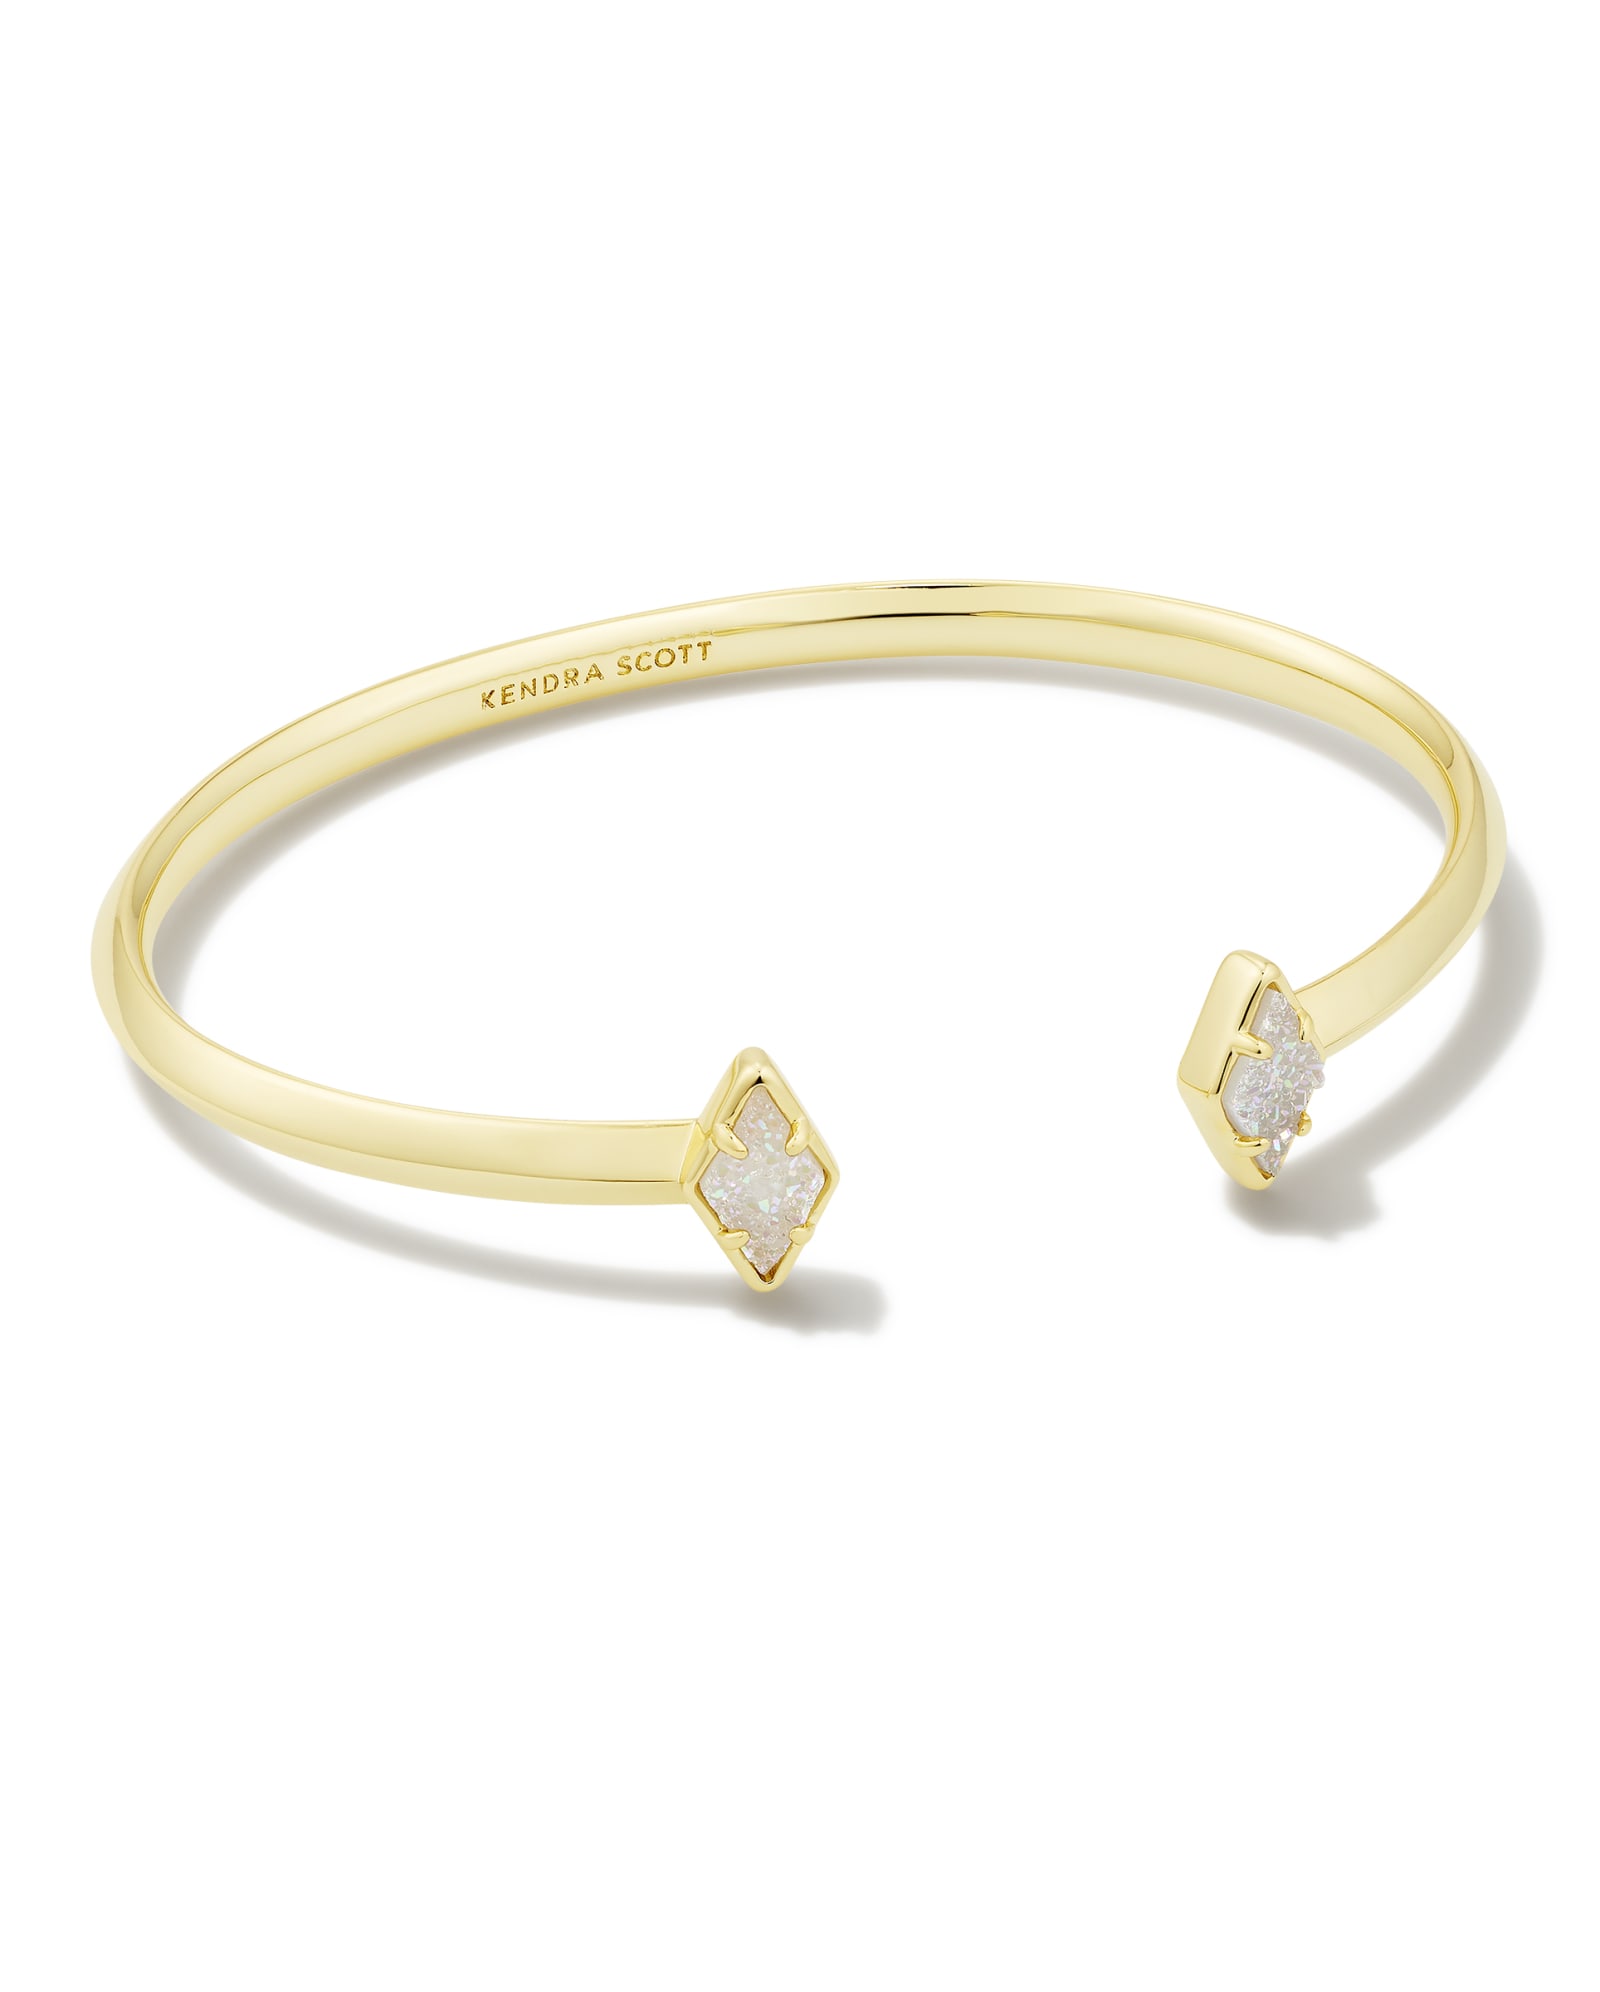 Candice Gold Cuff Bracelet in Silver Filigree